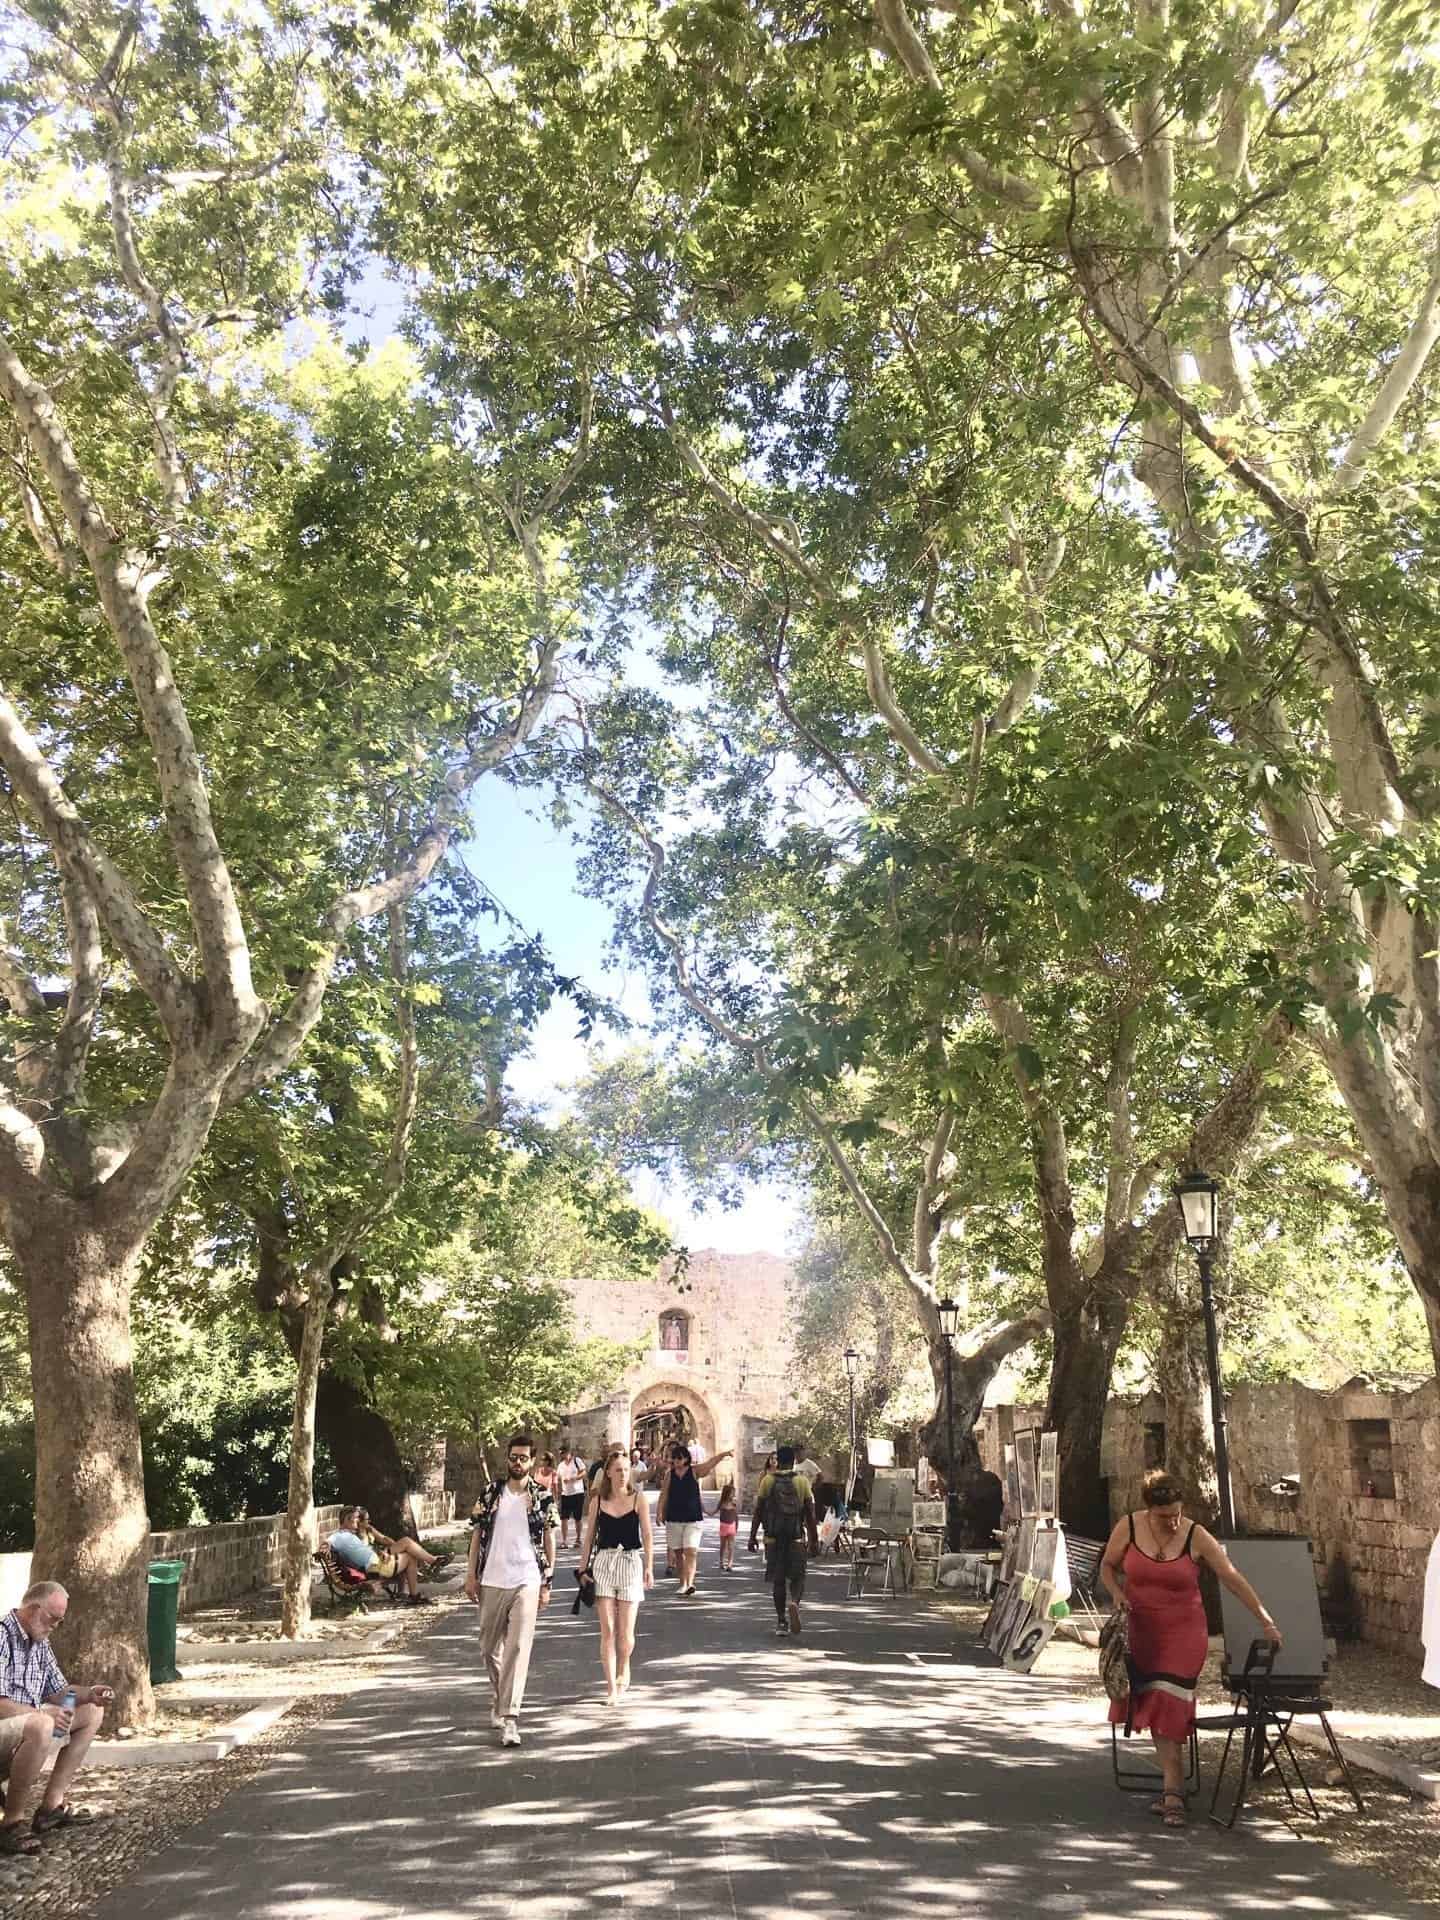 Disfrute de estos lugares famosos en Grecia, la gente camina por la calle bordeada de árboles mientras los lugareños venden artesanías al lado del la carretera